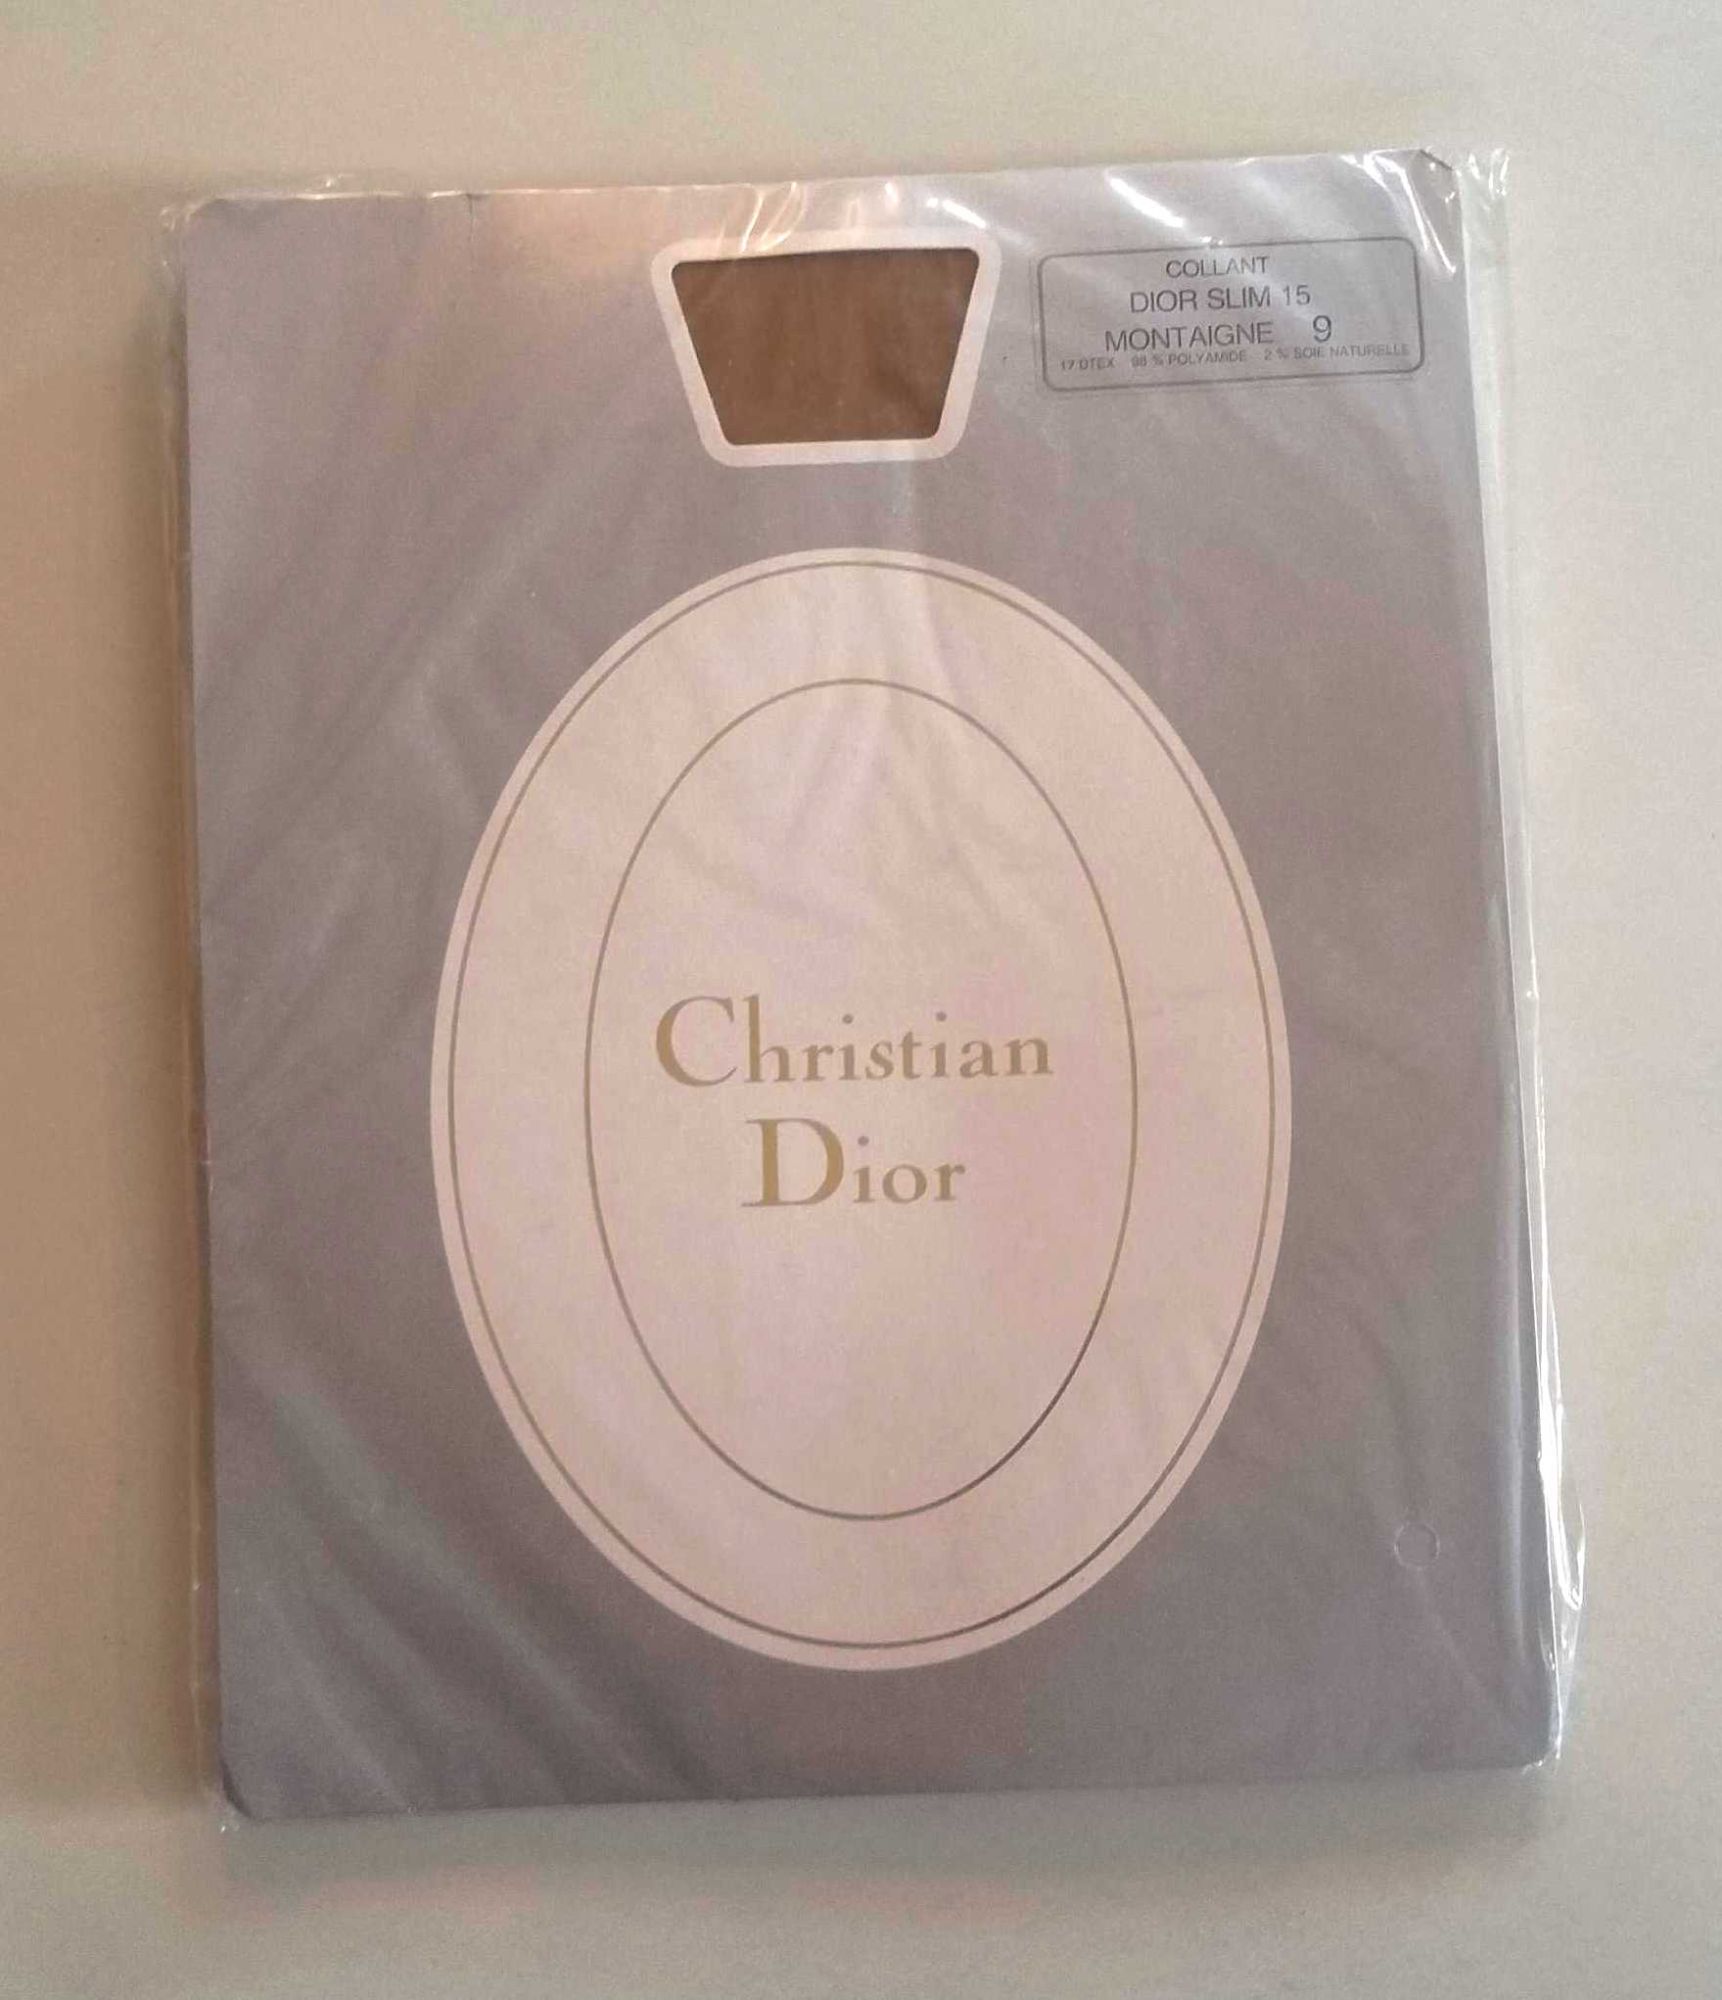 Collant Christian Dior Slim 15 Montaigne Taille 9 (2) 2% Soie